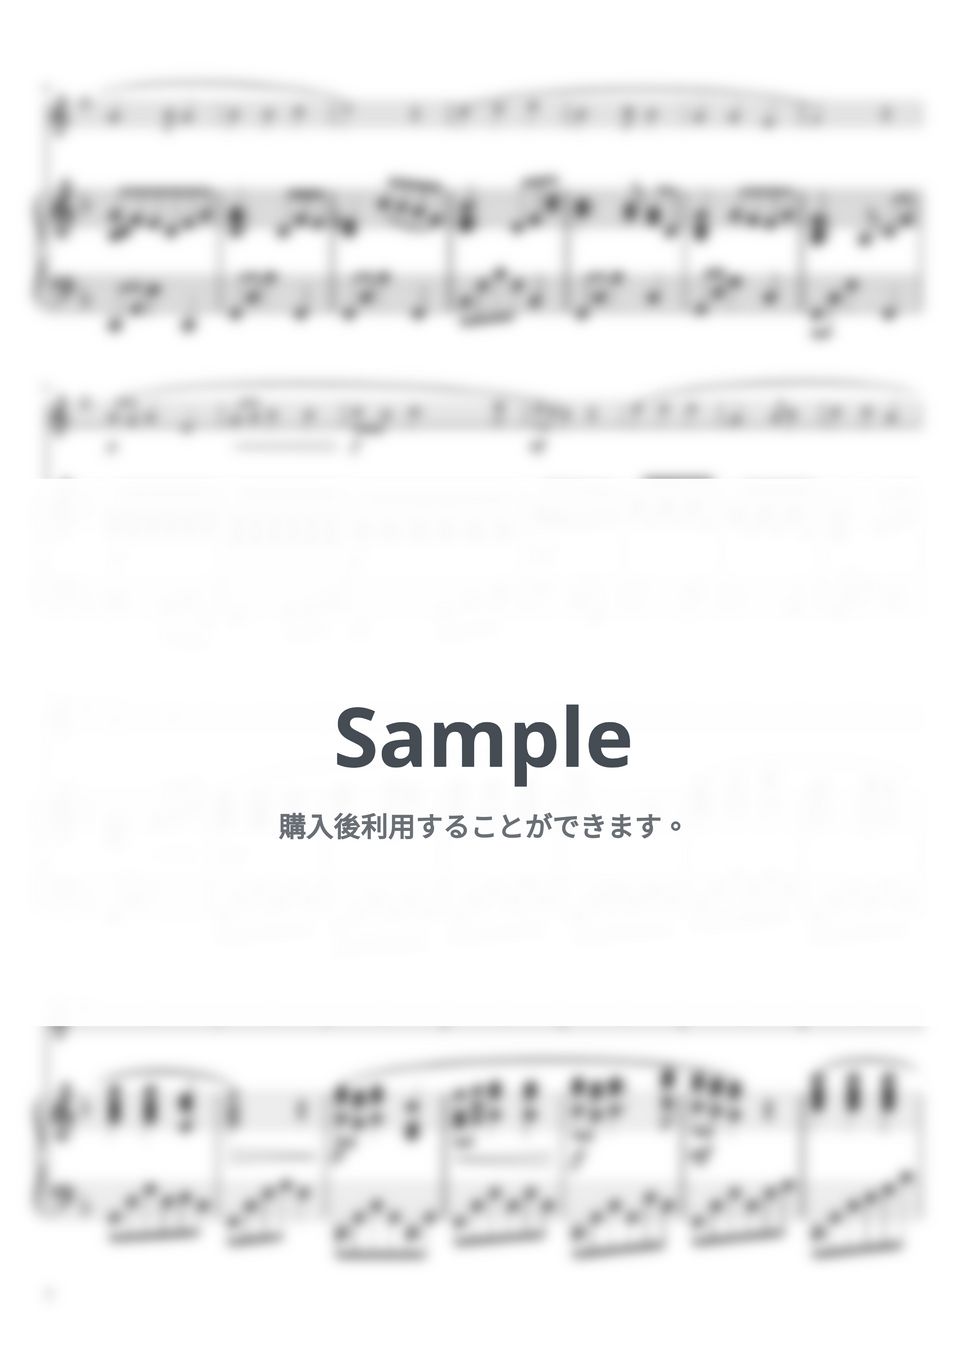 故郷 (Fdur・バスクラリネット&ピアノ) by pfkaori